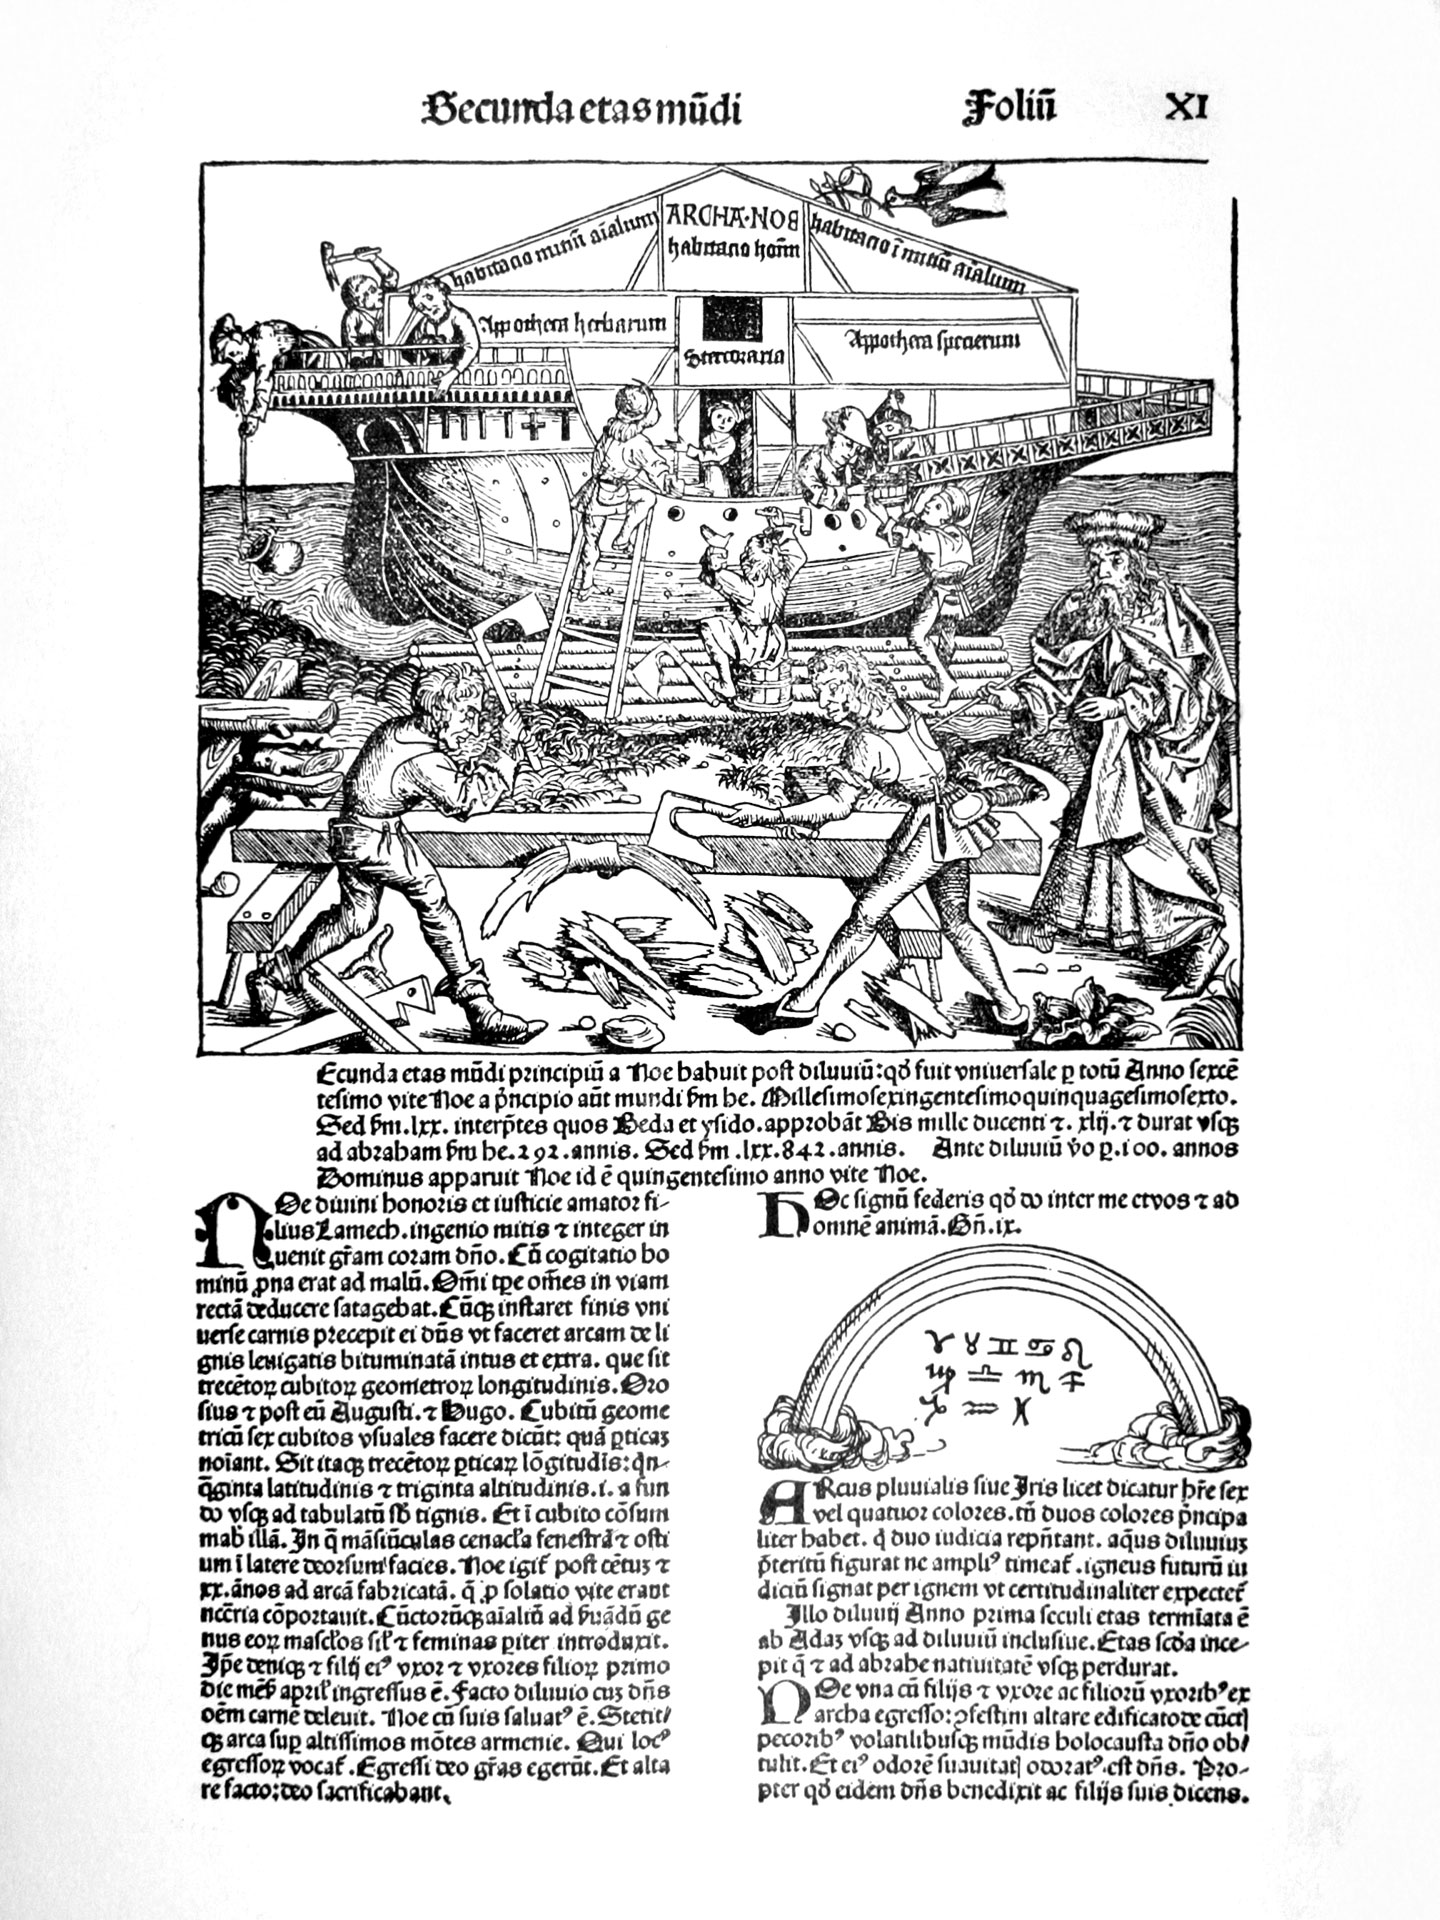 Pressendruck Gutenberg-Museum, Schedelsche Weltchronik, Arche Noah